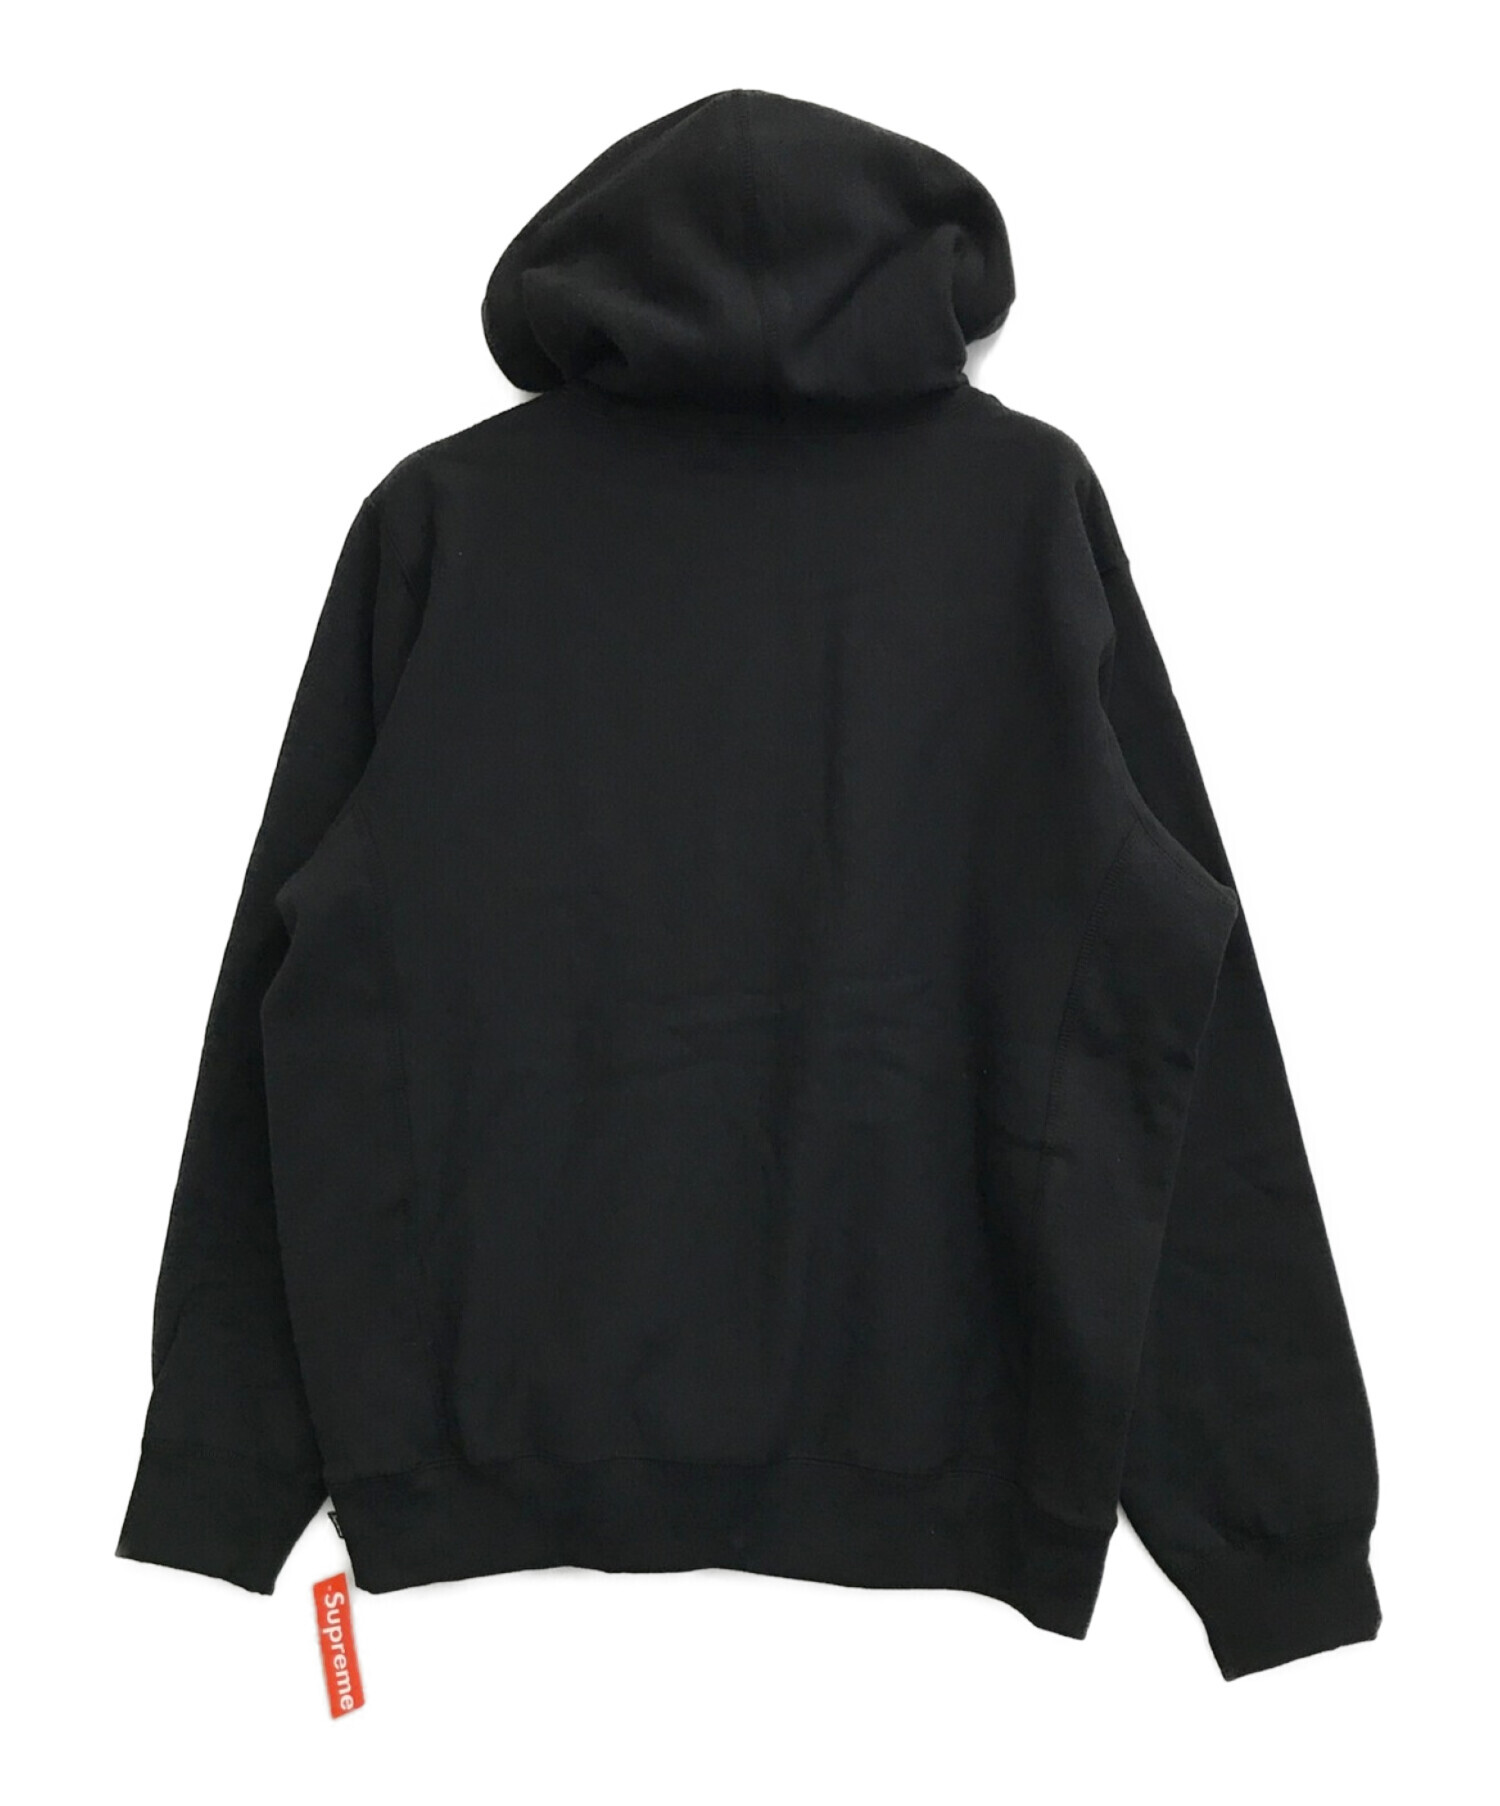 Supreme (シュプリーム) Apple Hoodes Sweatshirt ブラック サイズ:L